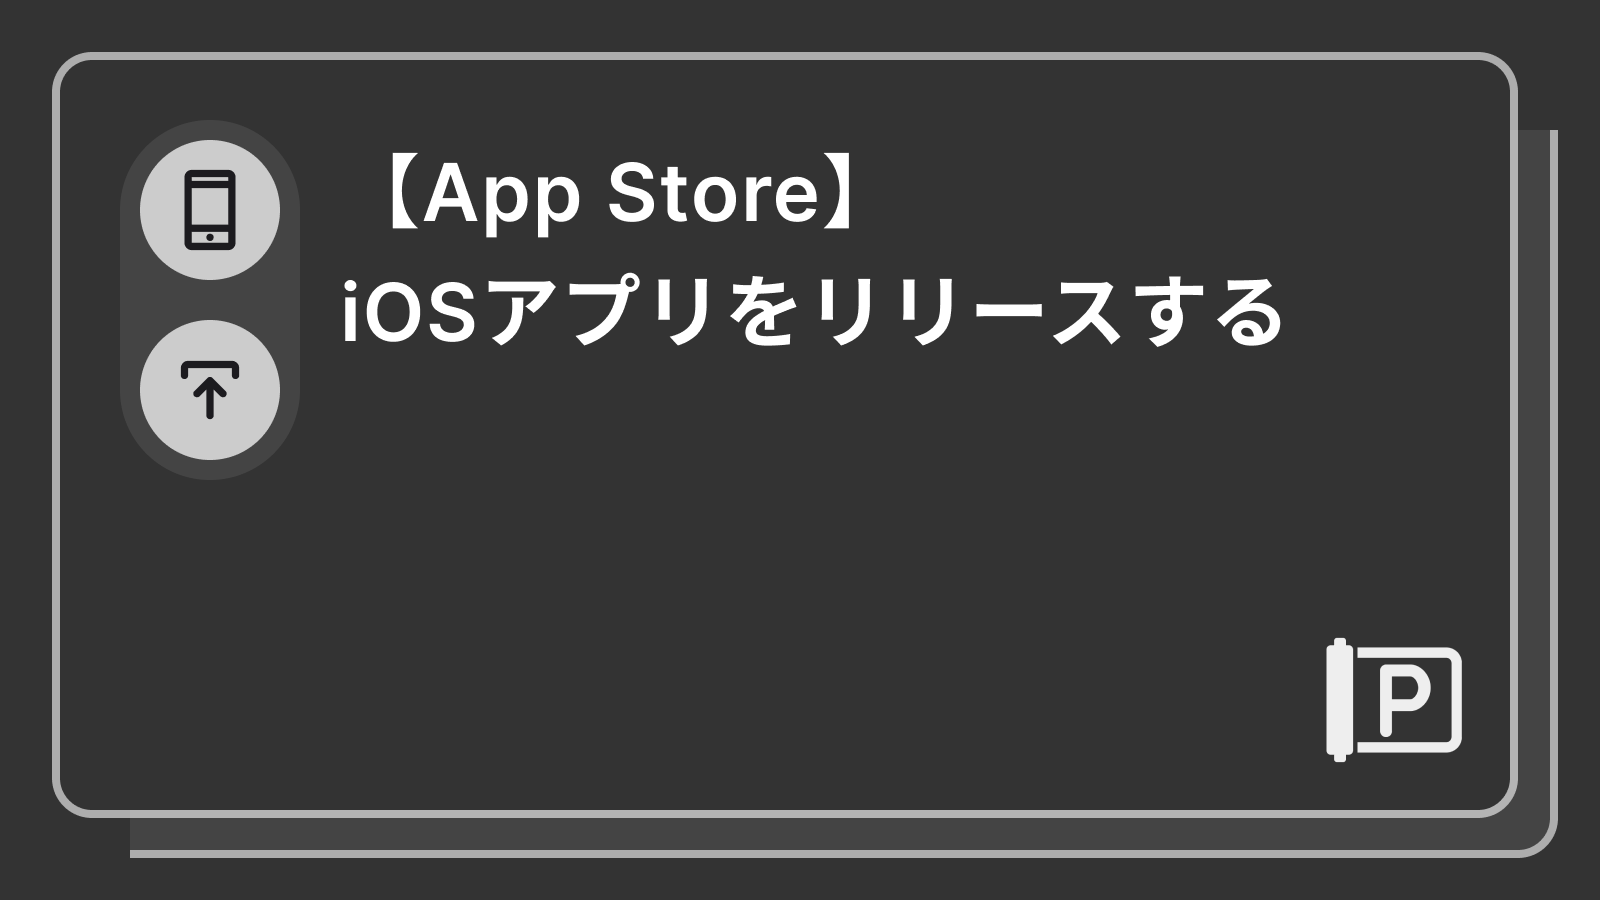 【App Store】iOSアプリをリリースする